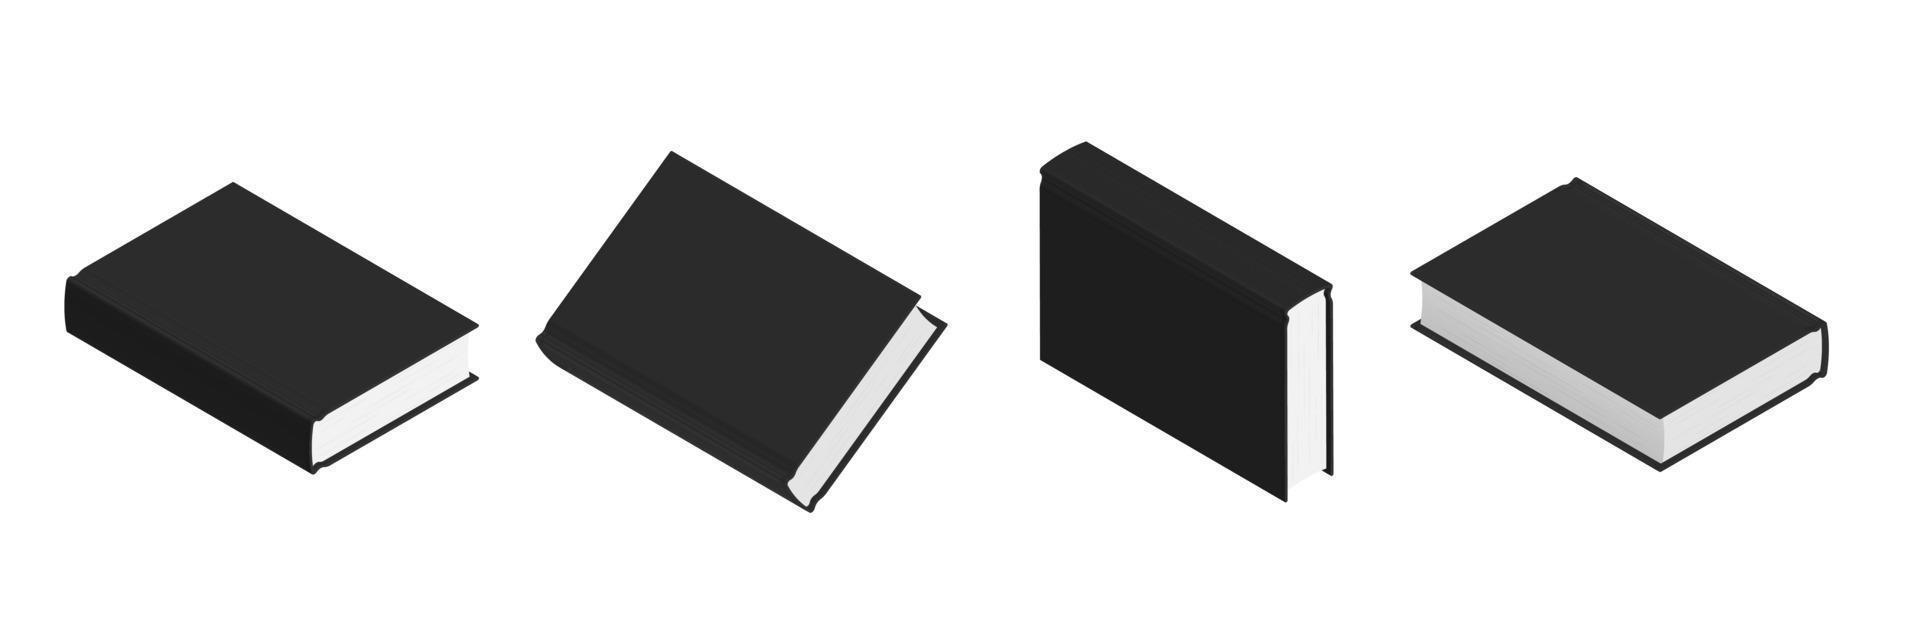 conjunto de libros negros cerrados en diferentes posiciones para librería vector